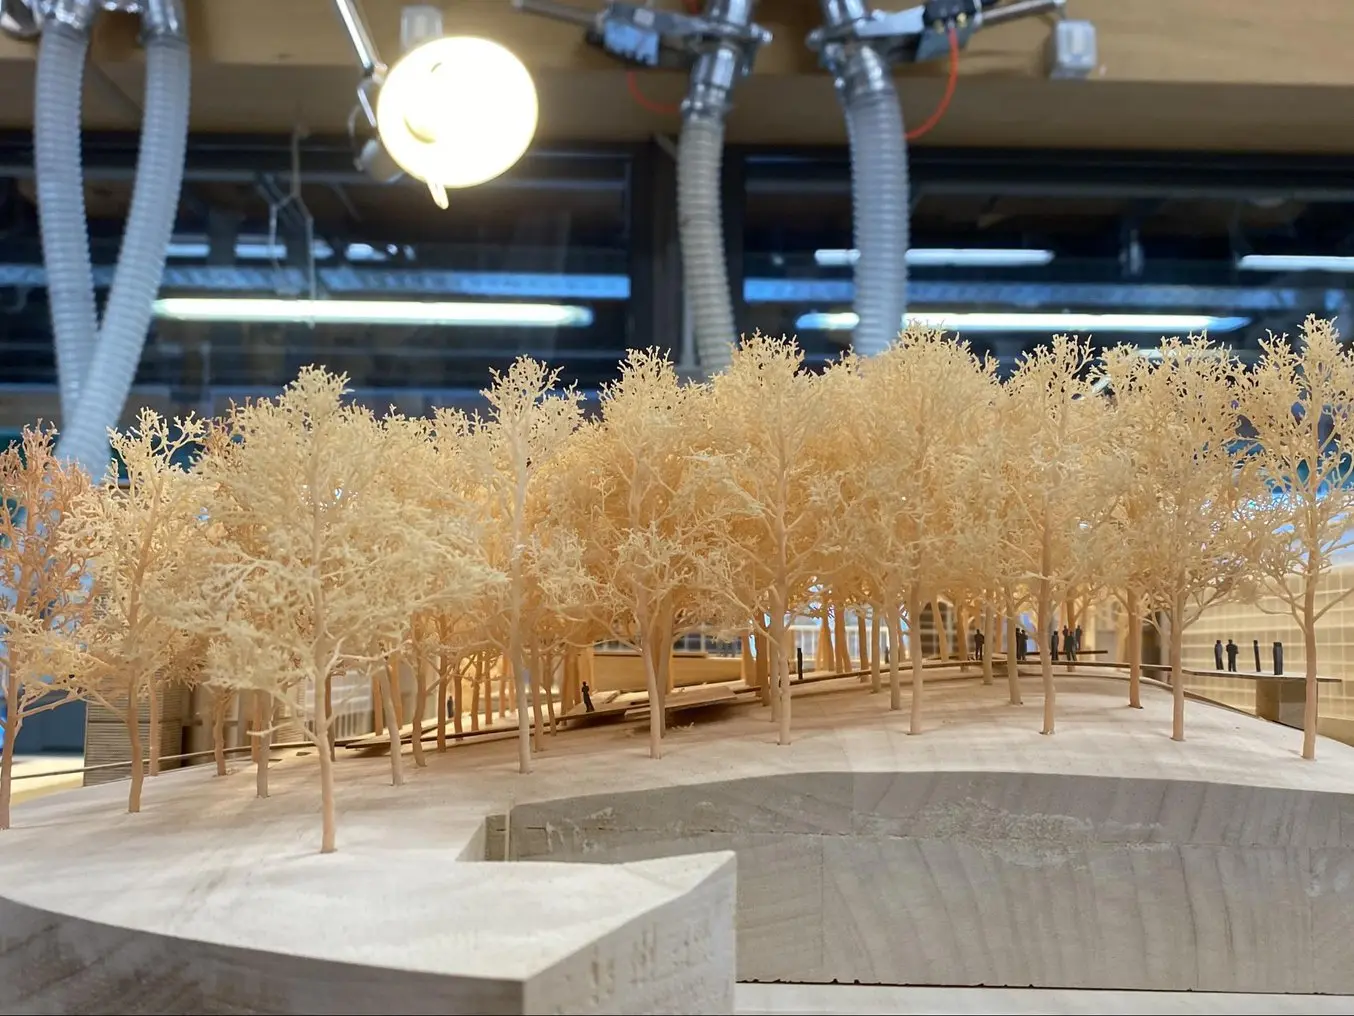 L'impression 3D est idéale pour fabriquer des pièces d'architecture complexes : les arbres de ce modèle ont été imprimés en 3D avec une imprimante 3D SLA Formlabs.